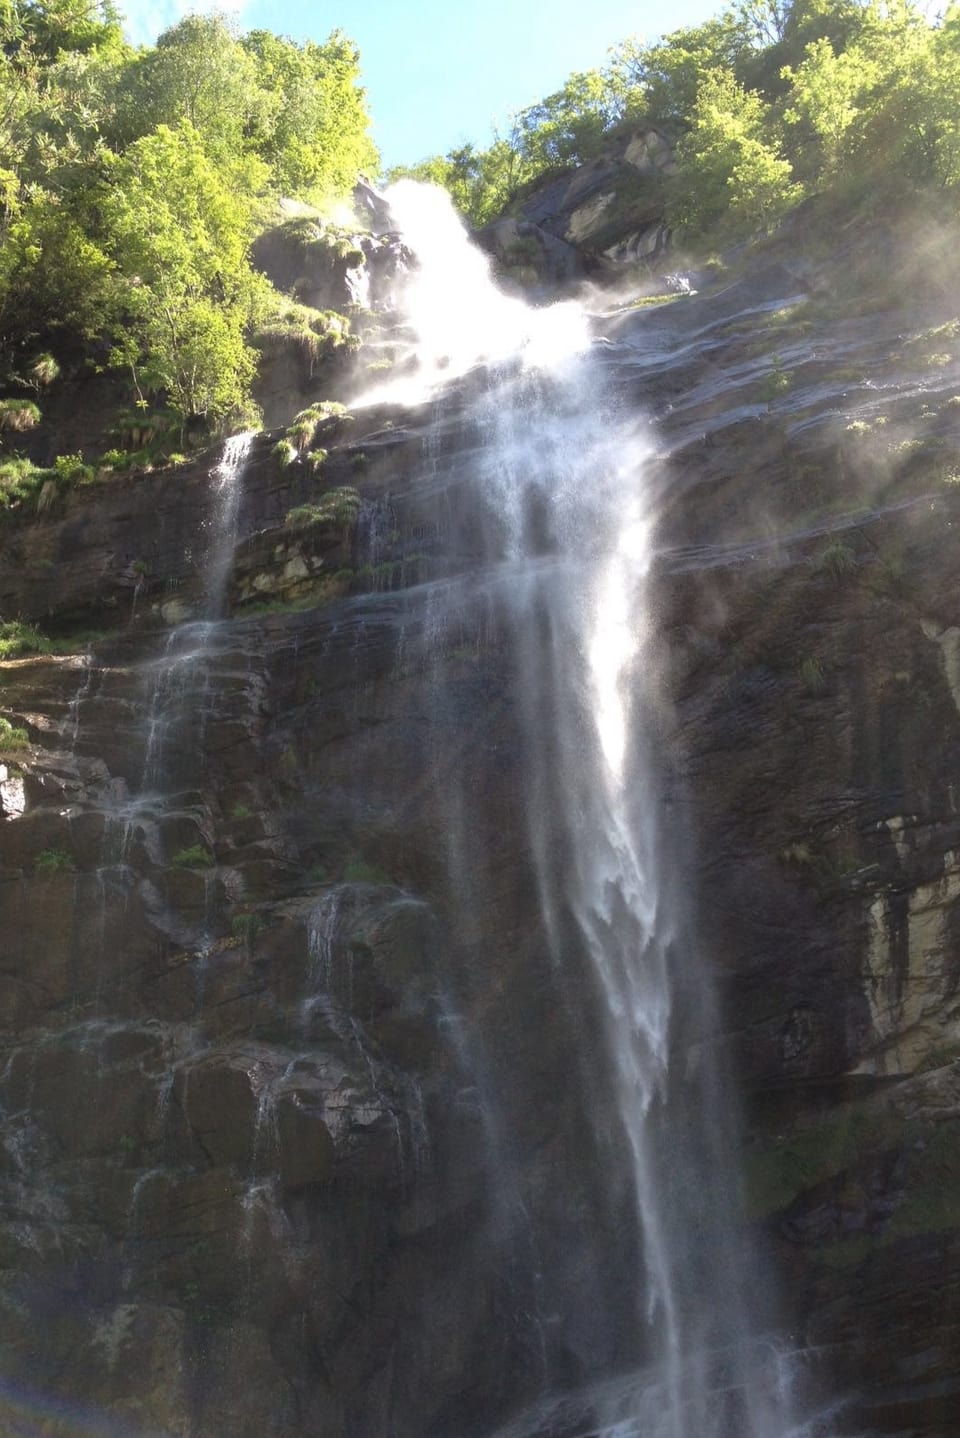 Steile Felswand, am Rand bewaldet, ein eindrücklicher Wasserfall rauscht in die Tiefe.